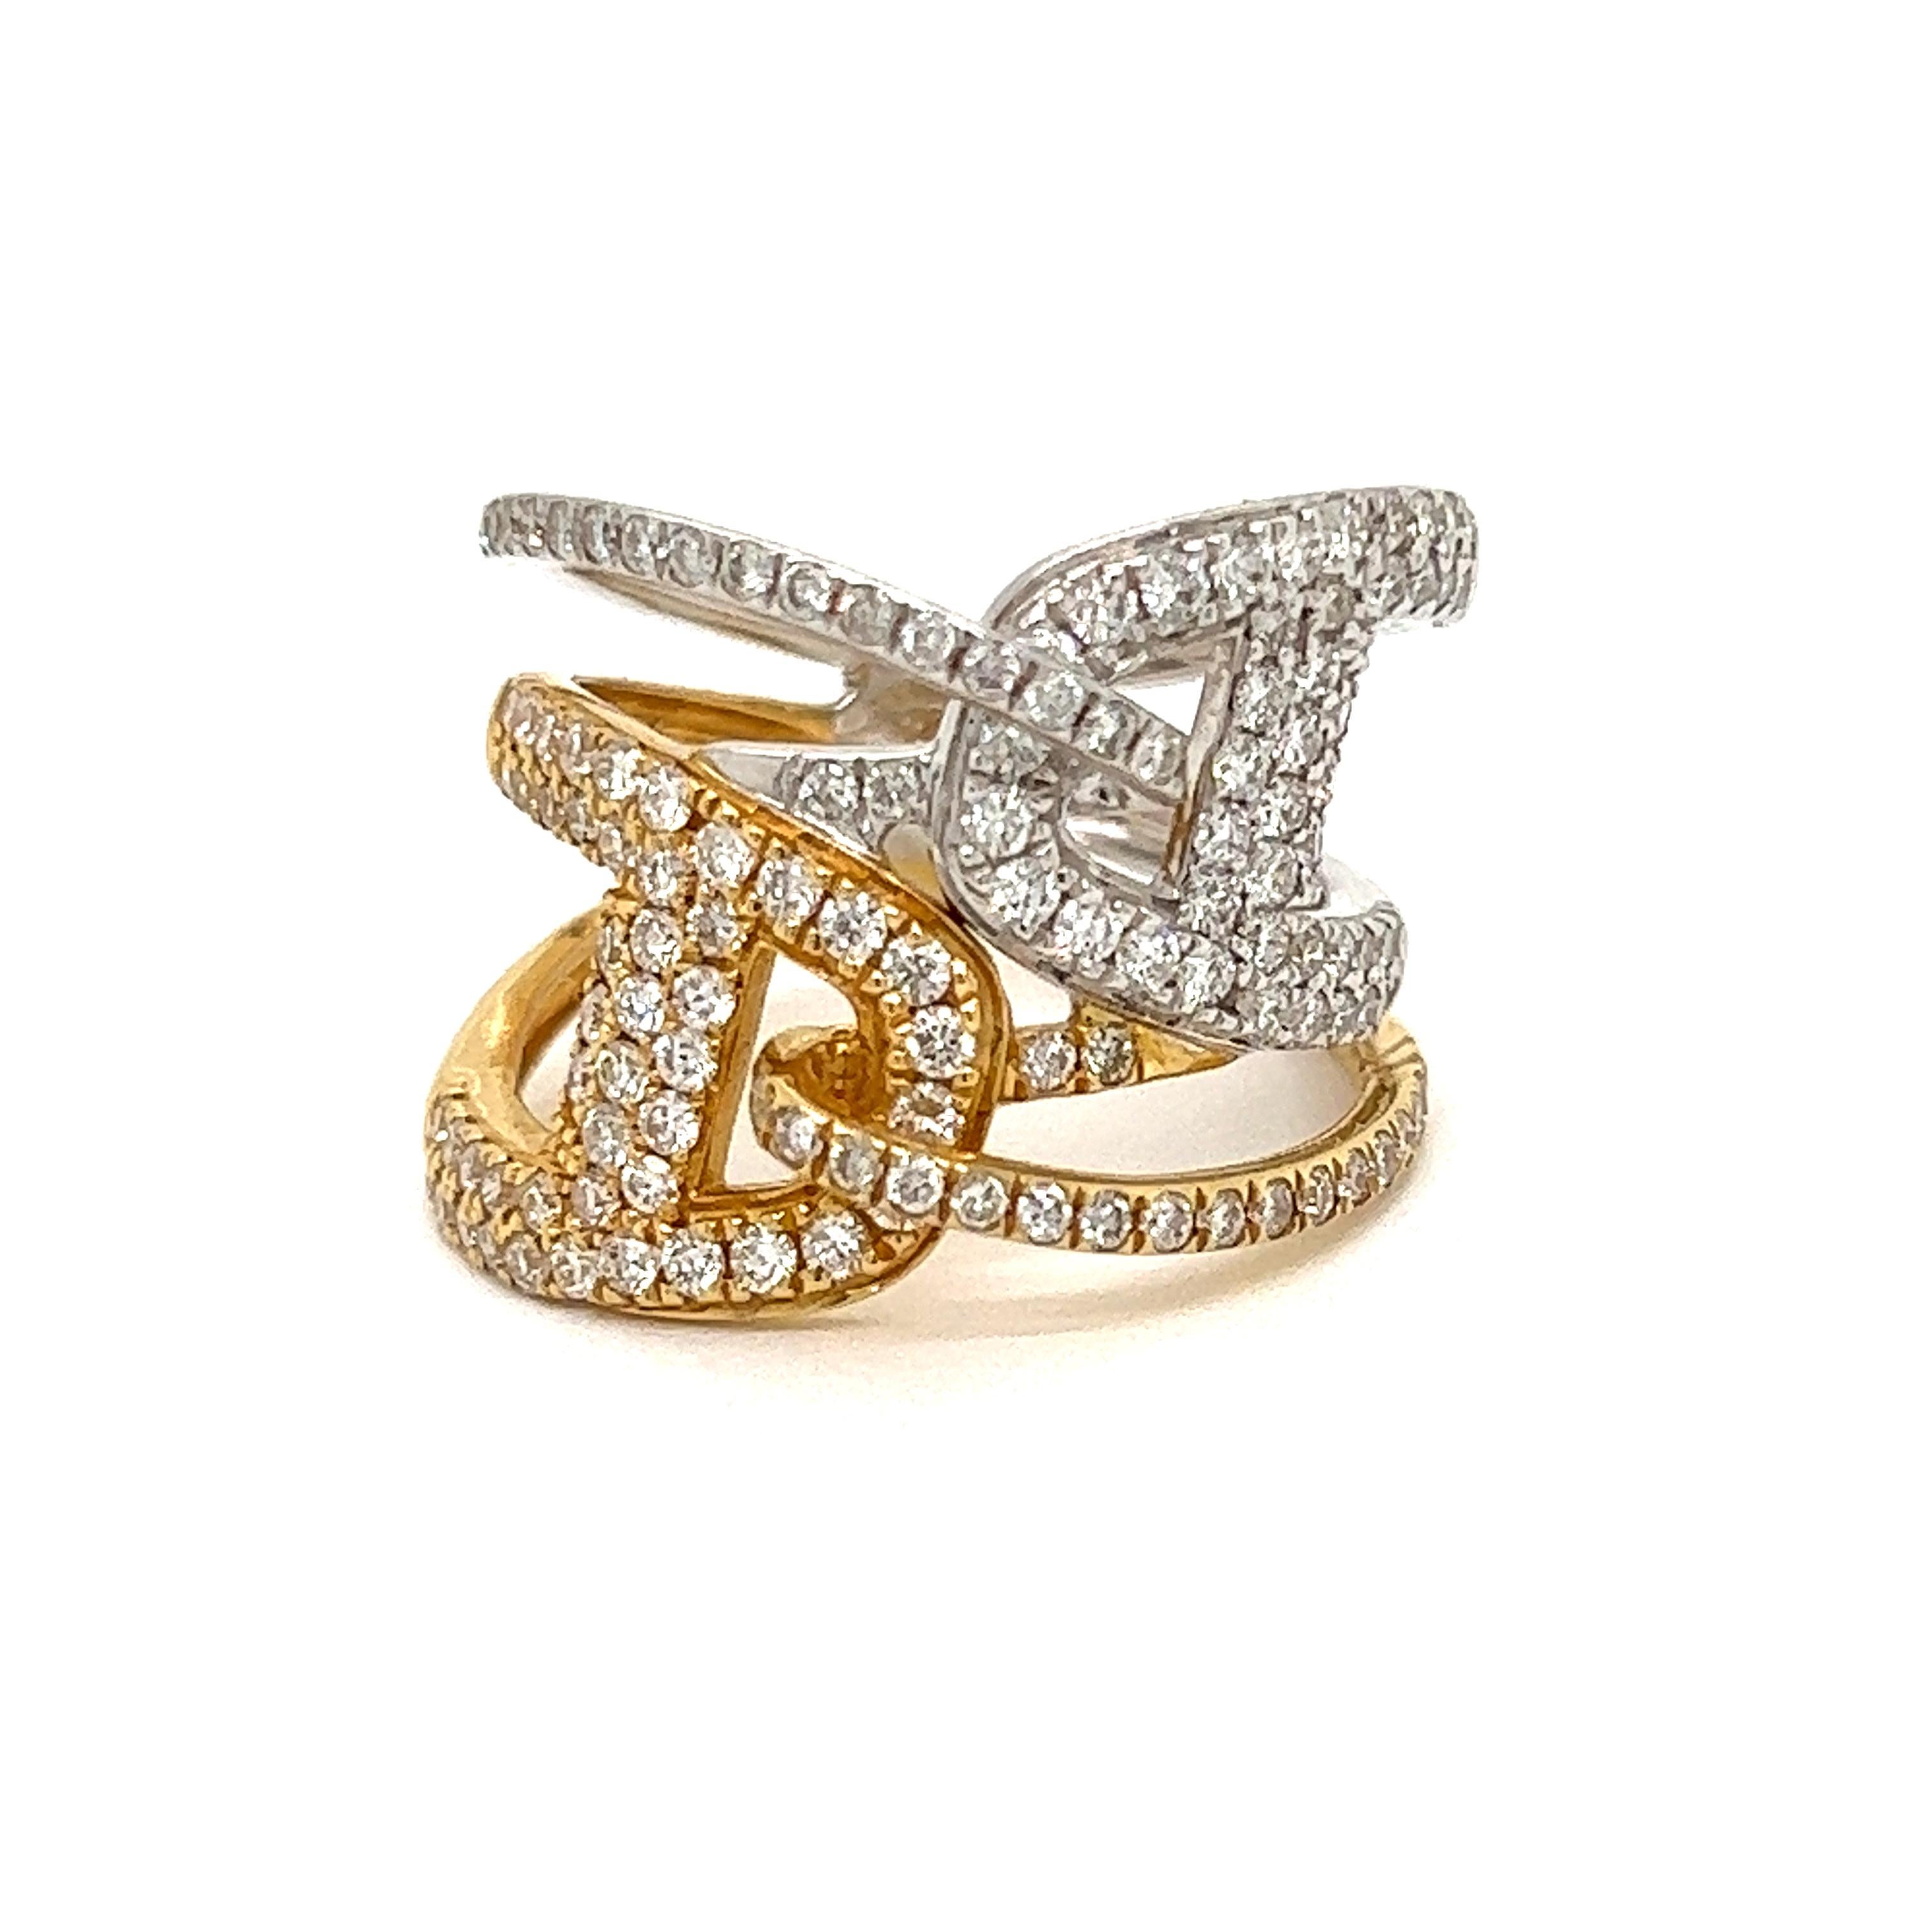 Dieser Ring aus 18 Karat Weiß- und Gelbgold ist das perfekte Statement!  1.25 ctw in schimmernden runden Diamanten, insgesamt 132 Diamanten.  Dieser außergewöhnliche Ring eignet sich perfekt als Geschenk zum Jahrestag, als Push-Geschenk oder als